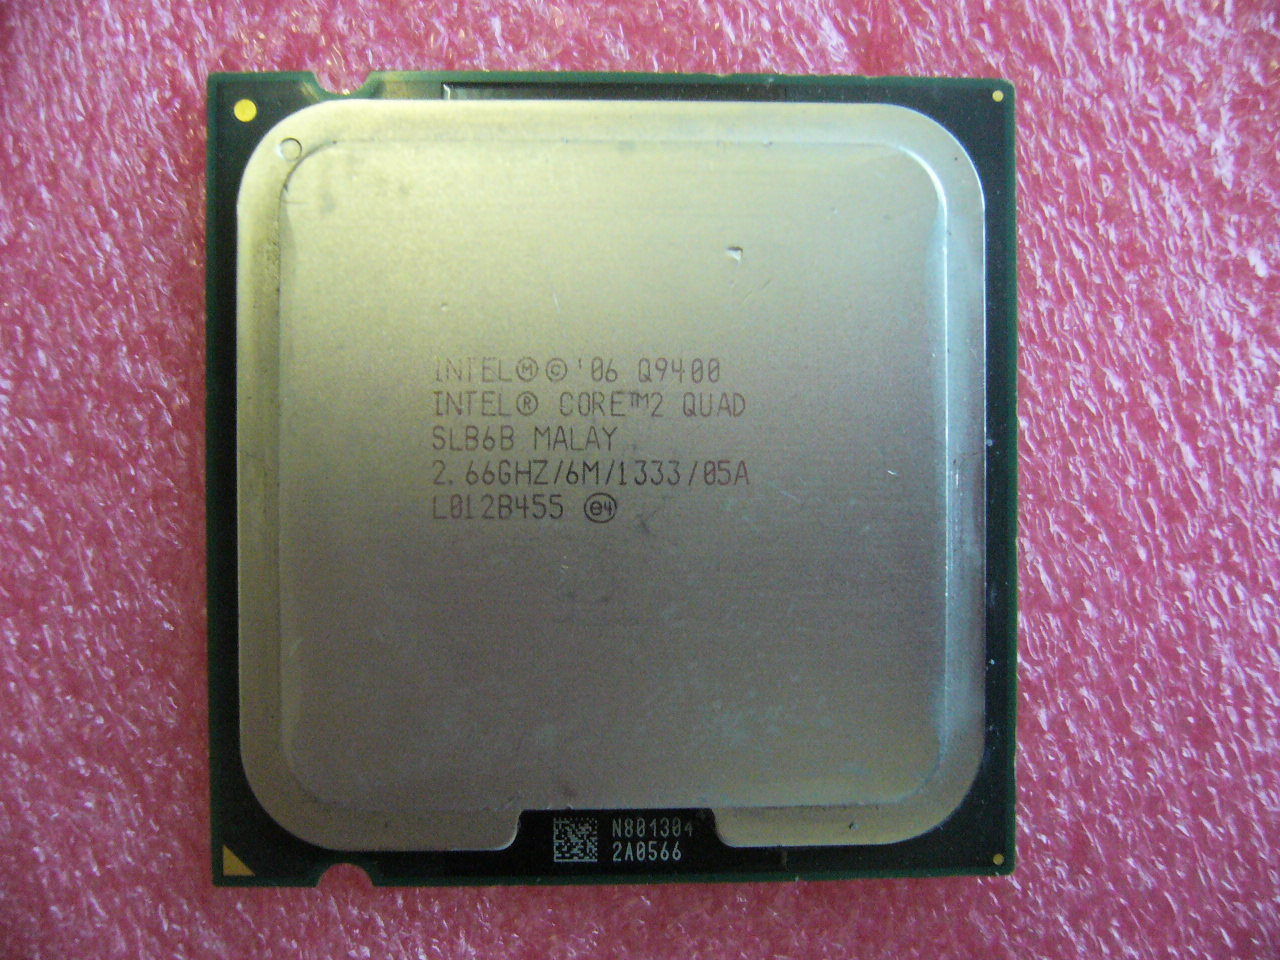 QTY 1x INTEL Quad Cores Q9400 CPU 2.66GHz/6MB/1333Mhz LGA775 SLB6B - zum Schließen ins Bild klicken